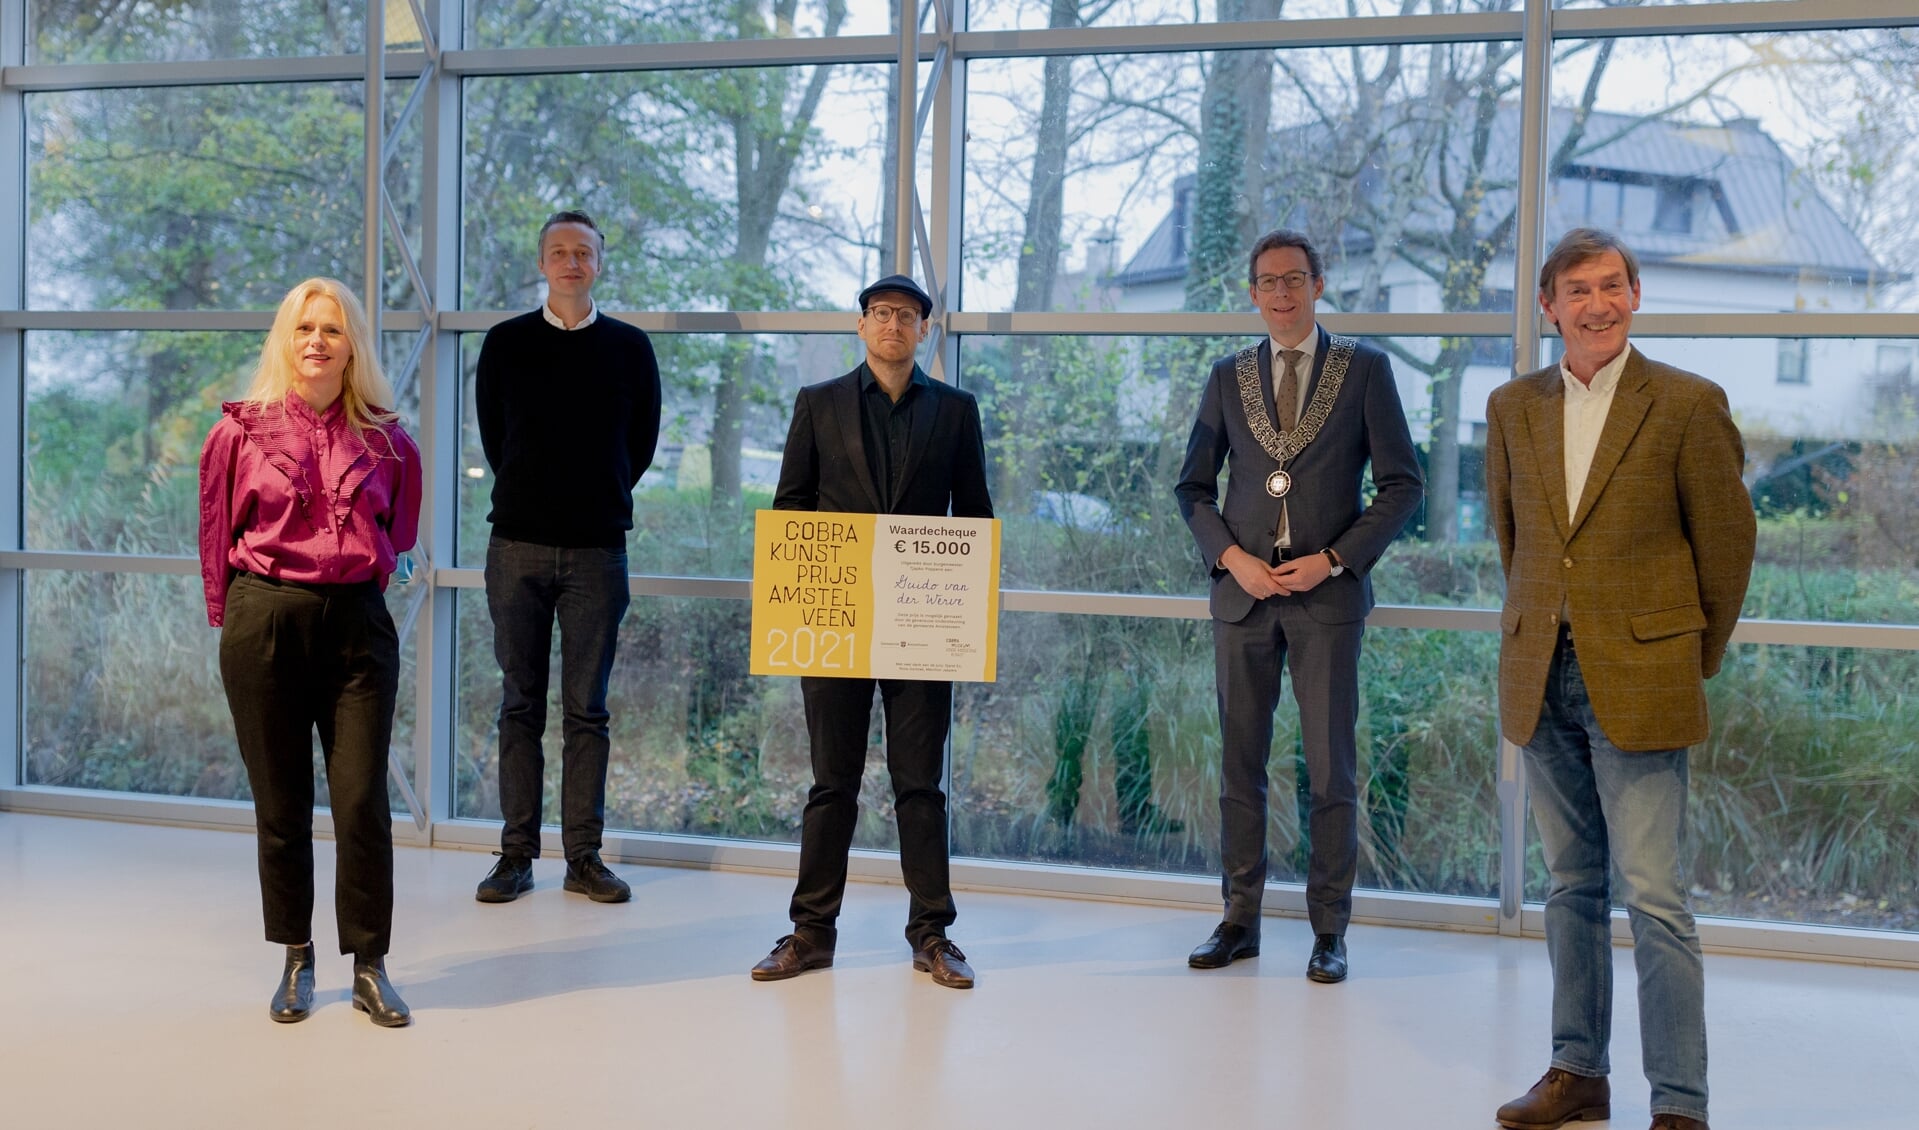 roos Gortzak (jurylid), Melchior Jaspers (jurylid), Guido van der Werve, Tjapko Poppens (burgemeester Amstelveen), Stefan van Raay (directeur Cobra Museum).